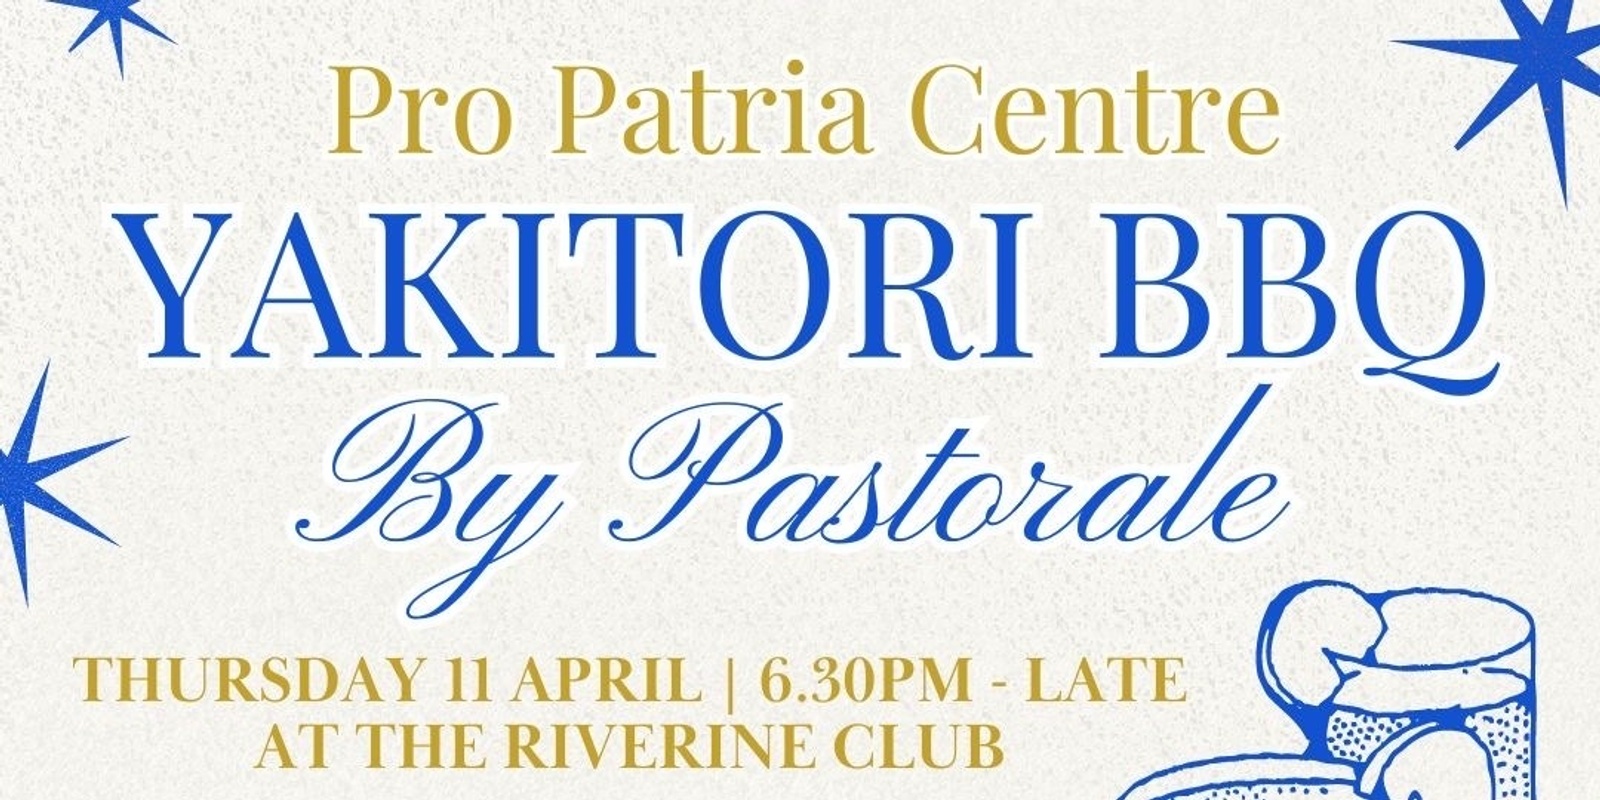 Banner image for Pro Patria Centre Yakitori BBQ